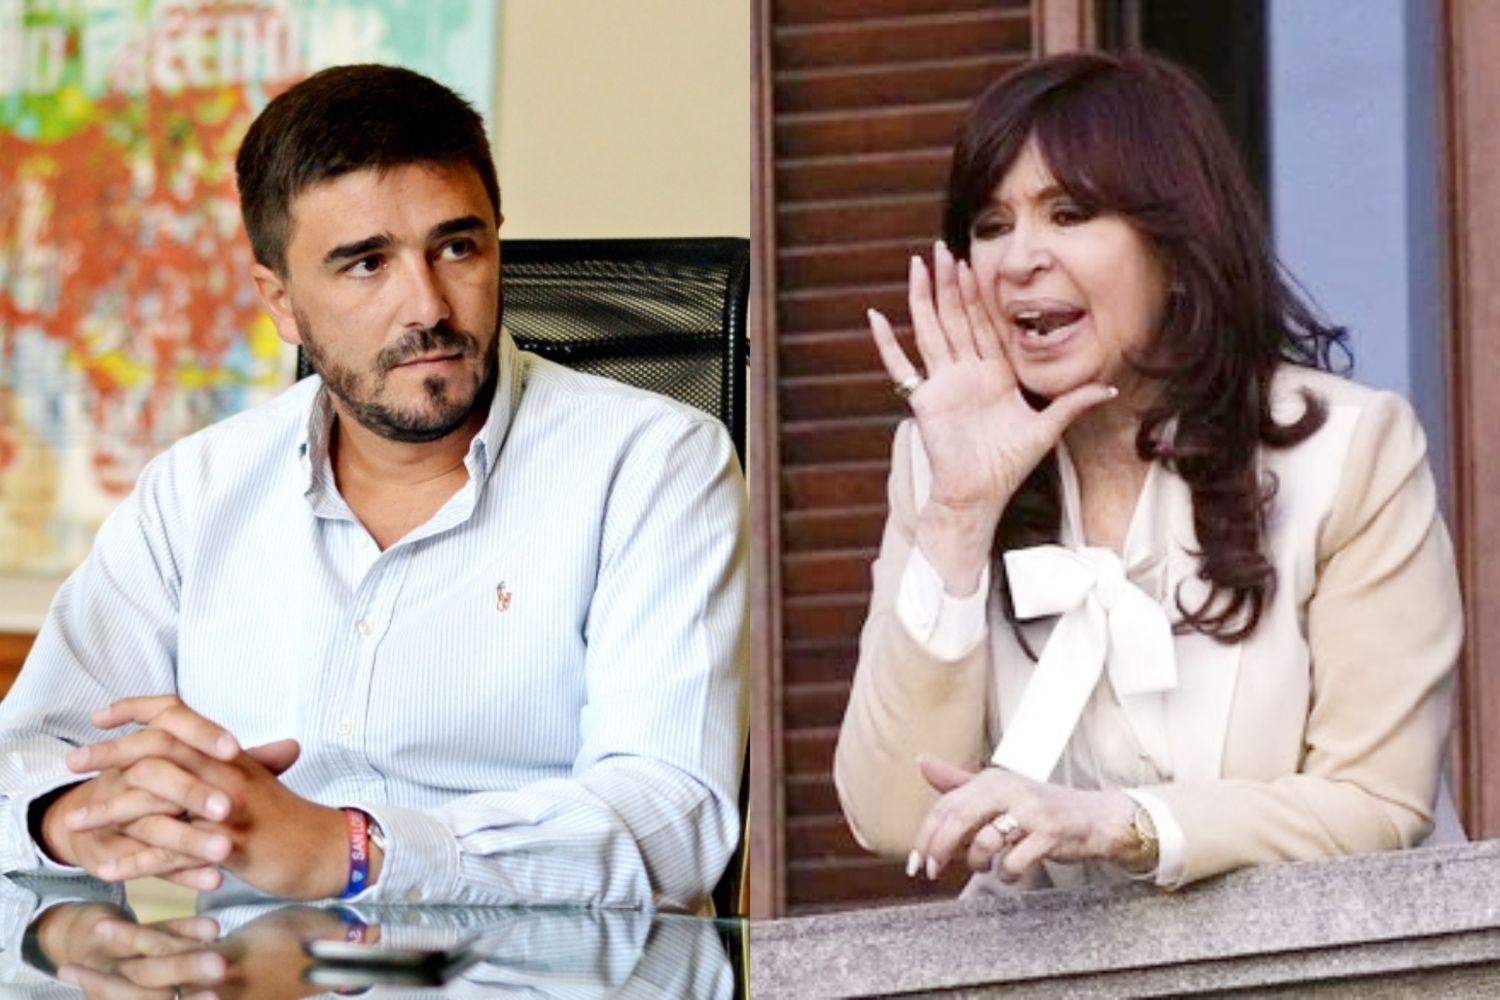 Desde Olavarría, el Intendente Galli dice que Cristina Kirchner hace “show” mientras el gobierno “ajusta”